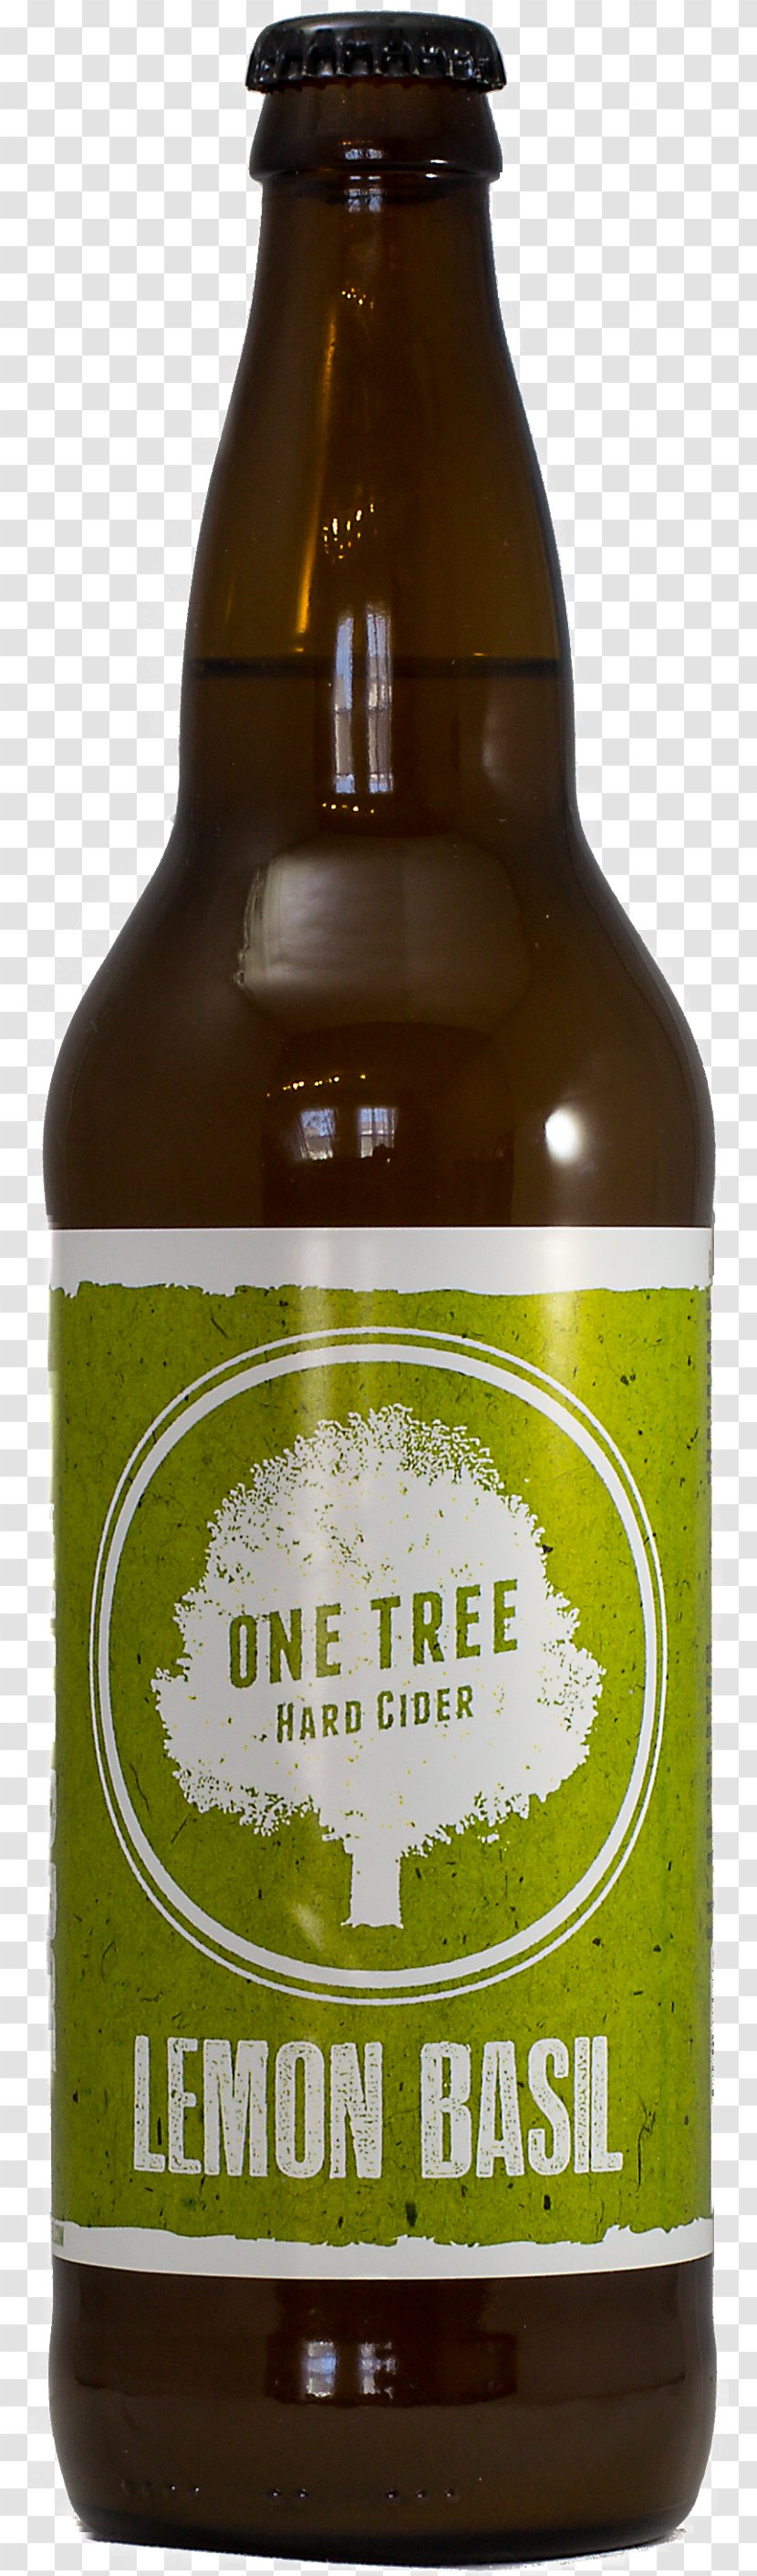 Ale One Tree Cider House Beer Bottle - Drink Transparent PNG